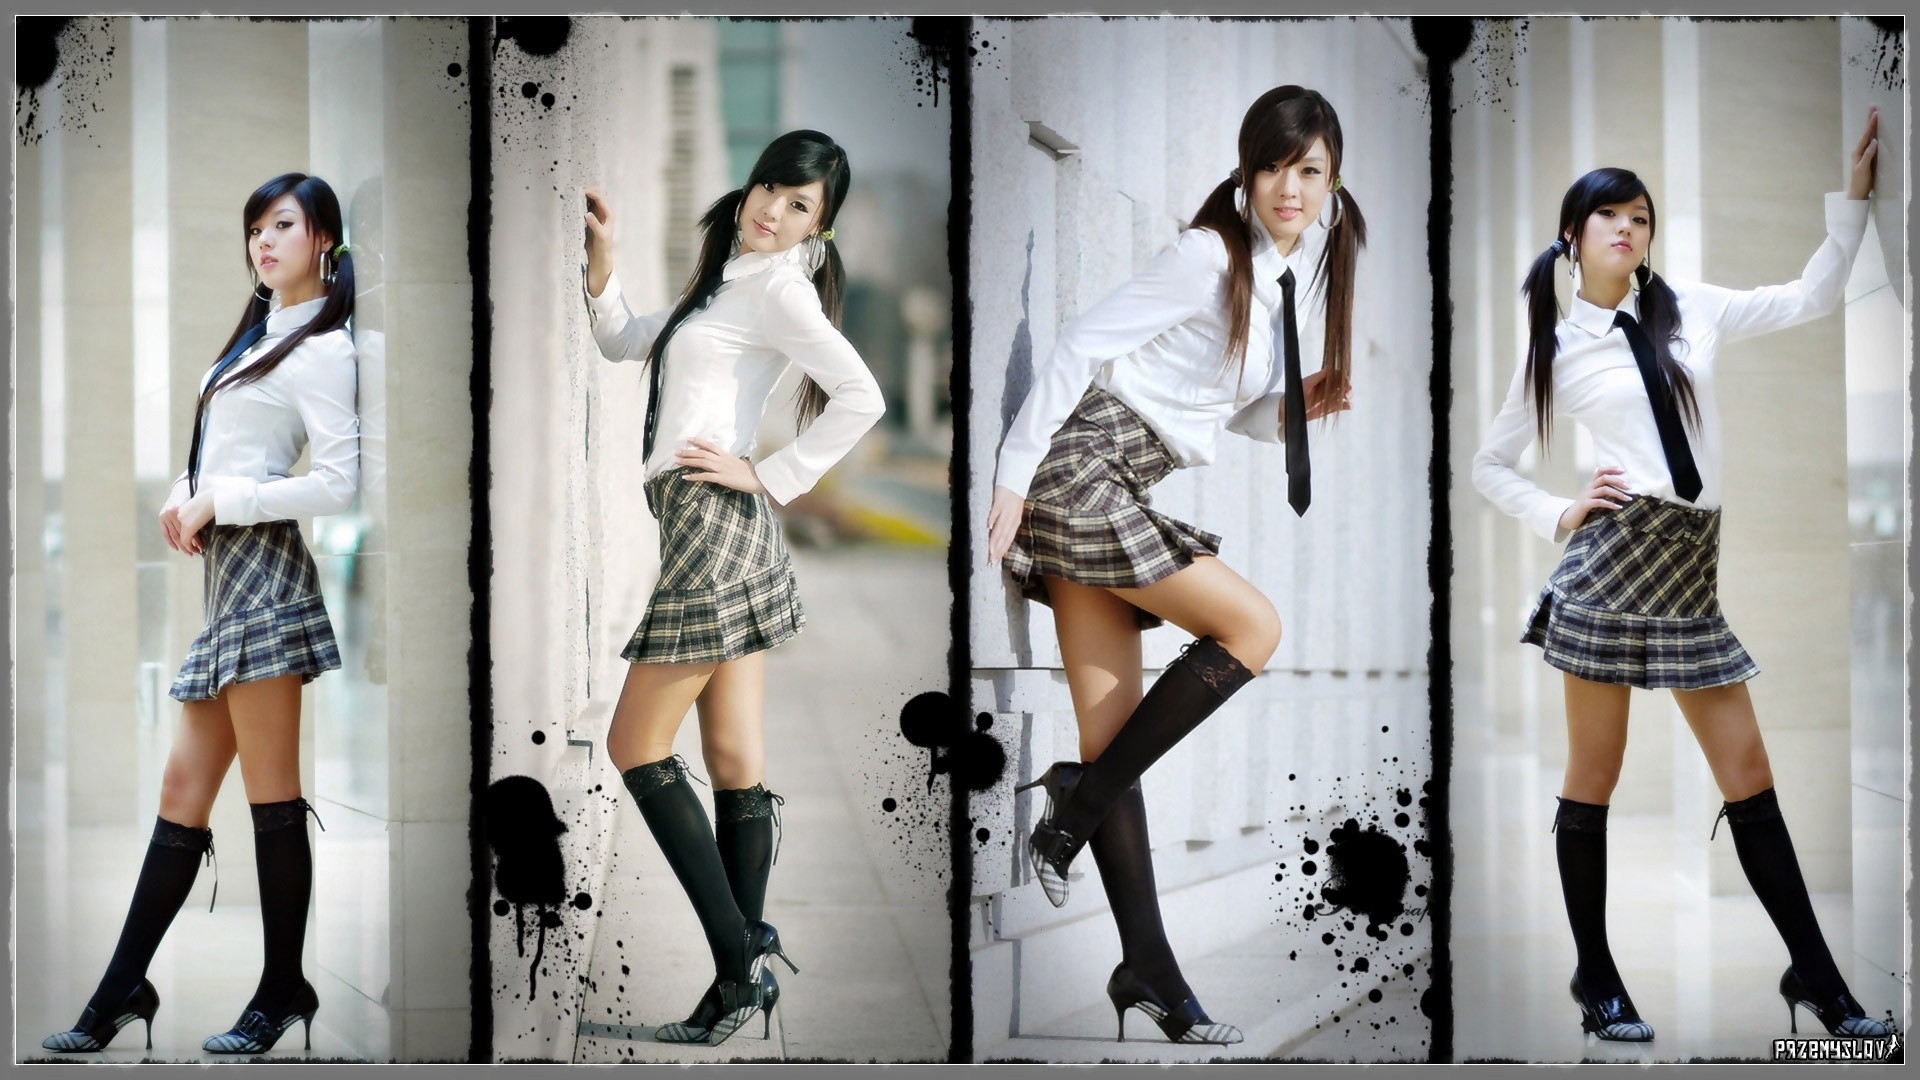 People 1920x1080 collage school uniform model Korean women Asian standing knee-highs high heels twintails brunette